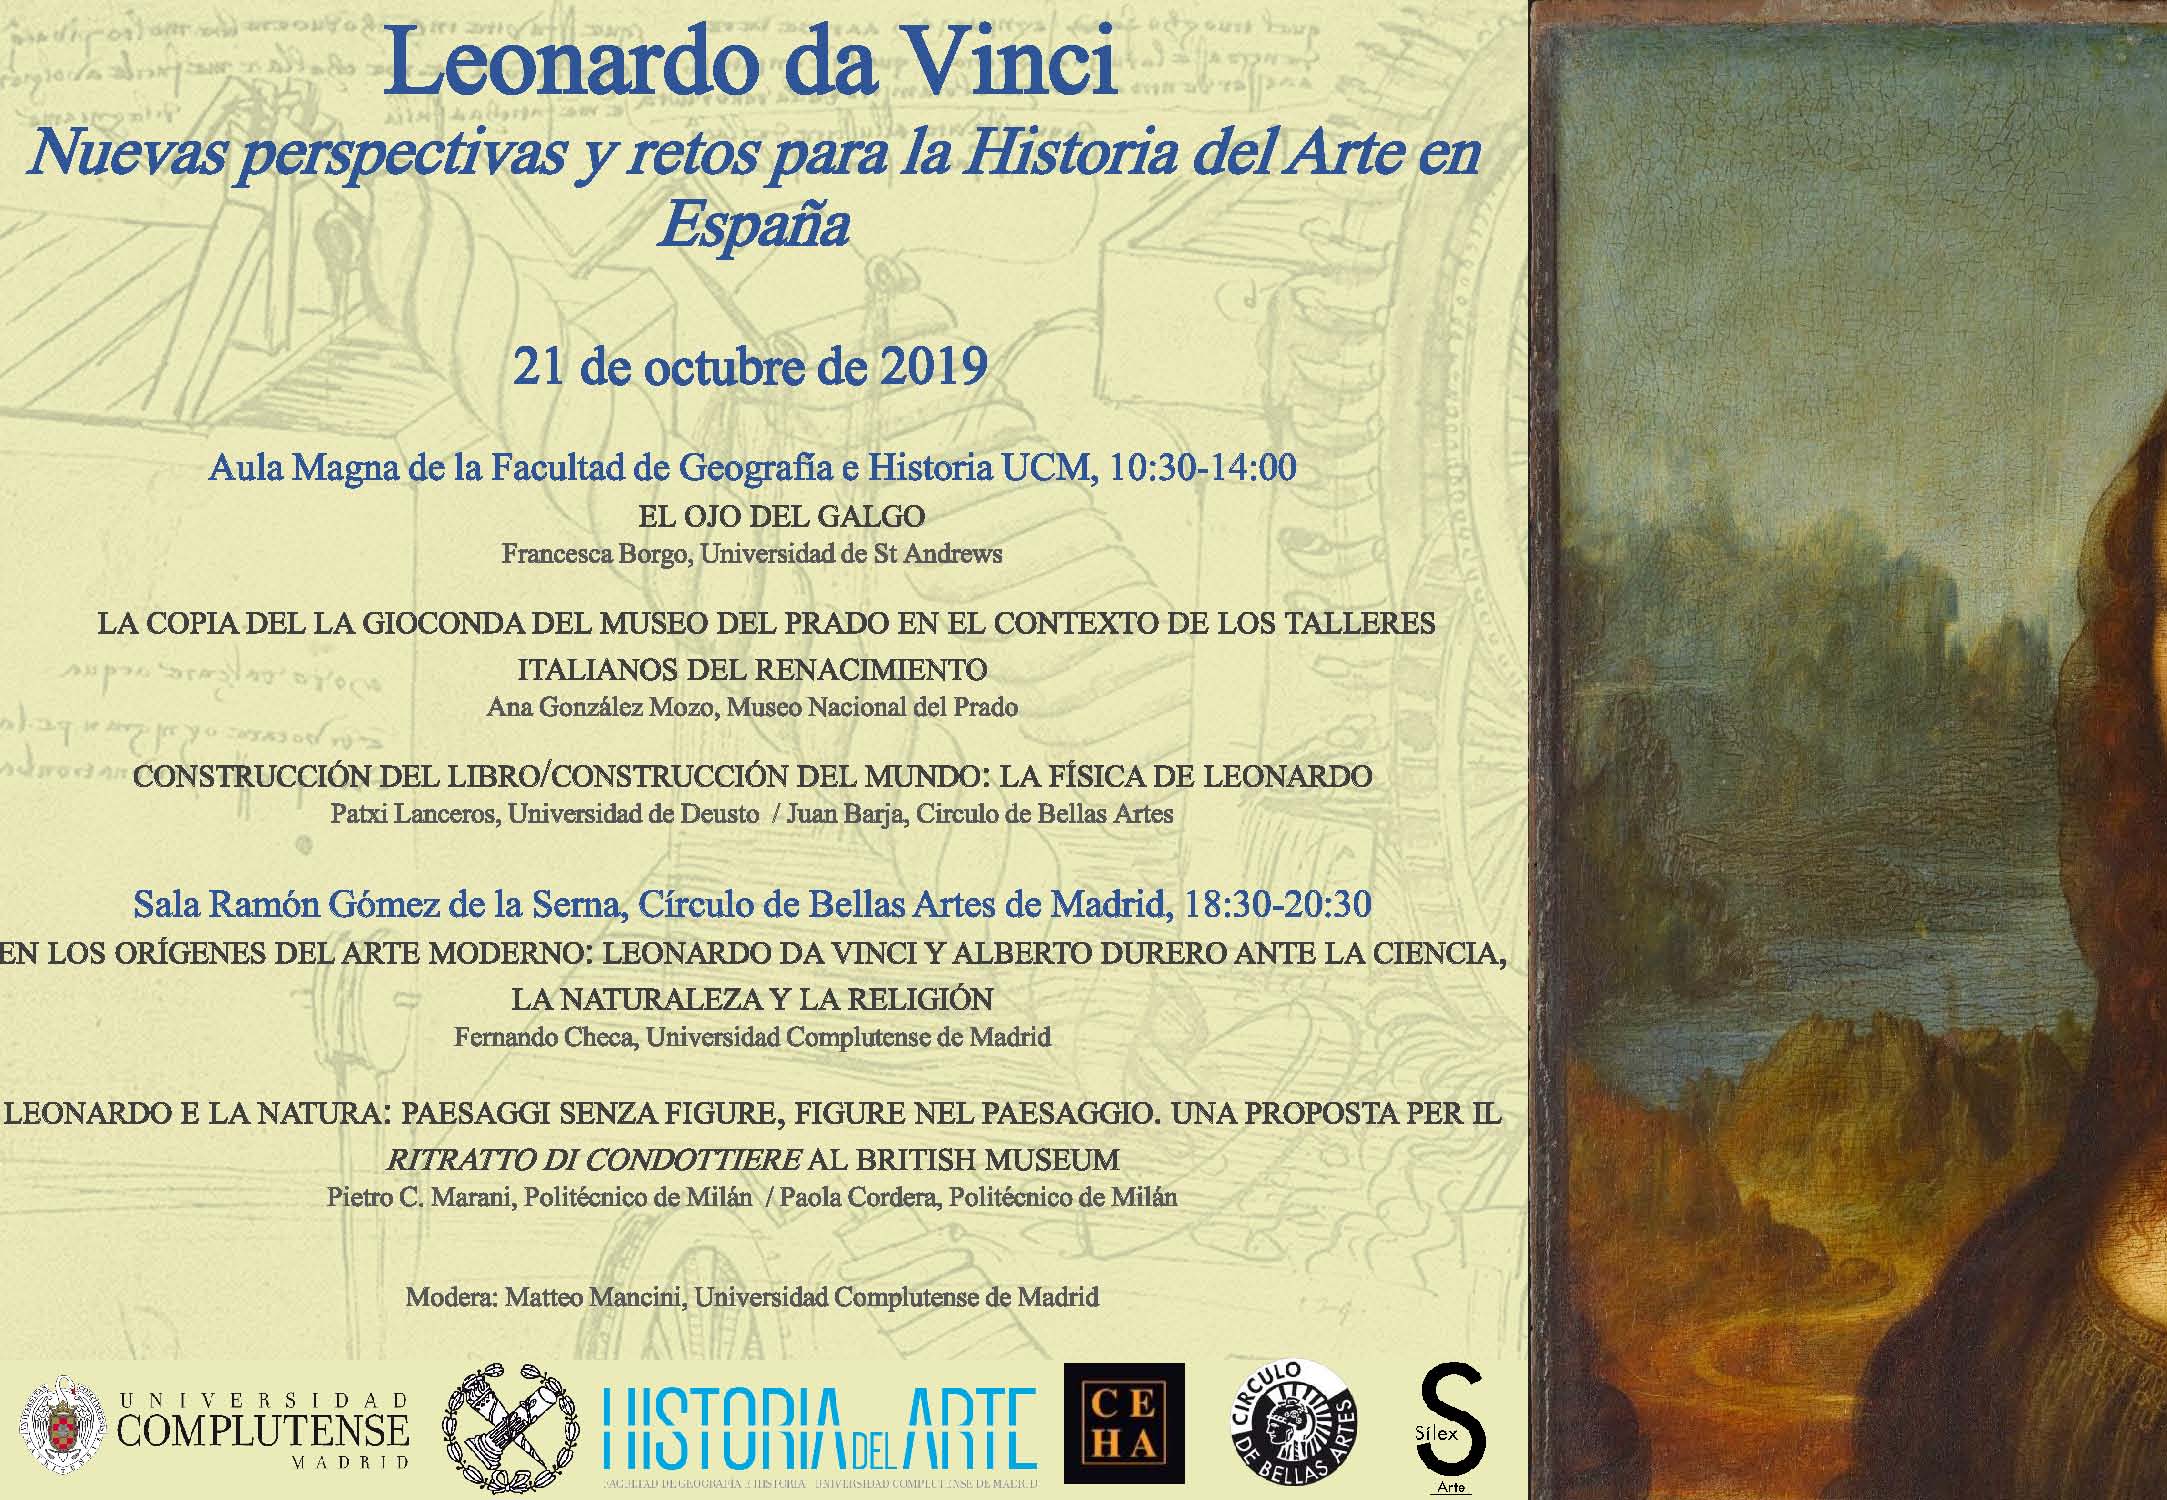 Leonardo da Vinci: Nuevas perspectivas para la Historia del Arte en España